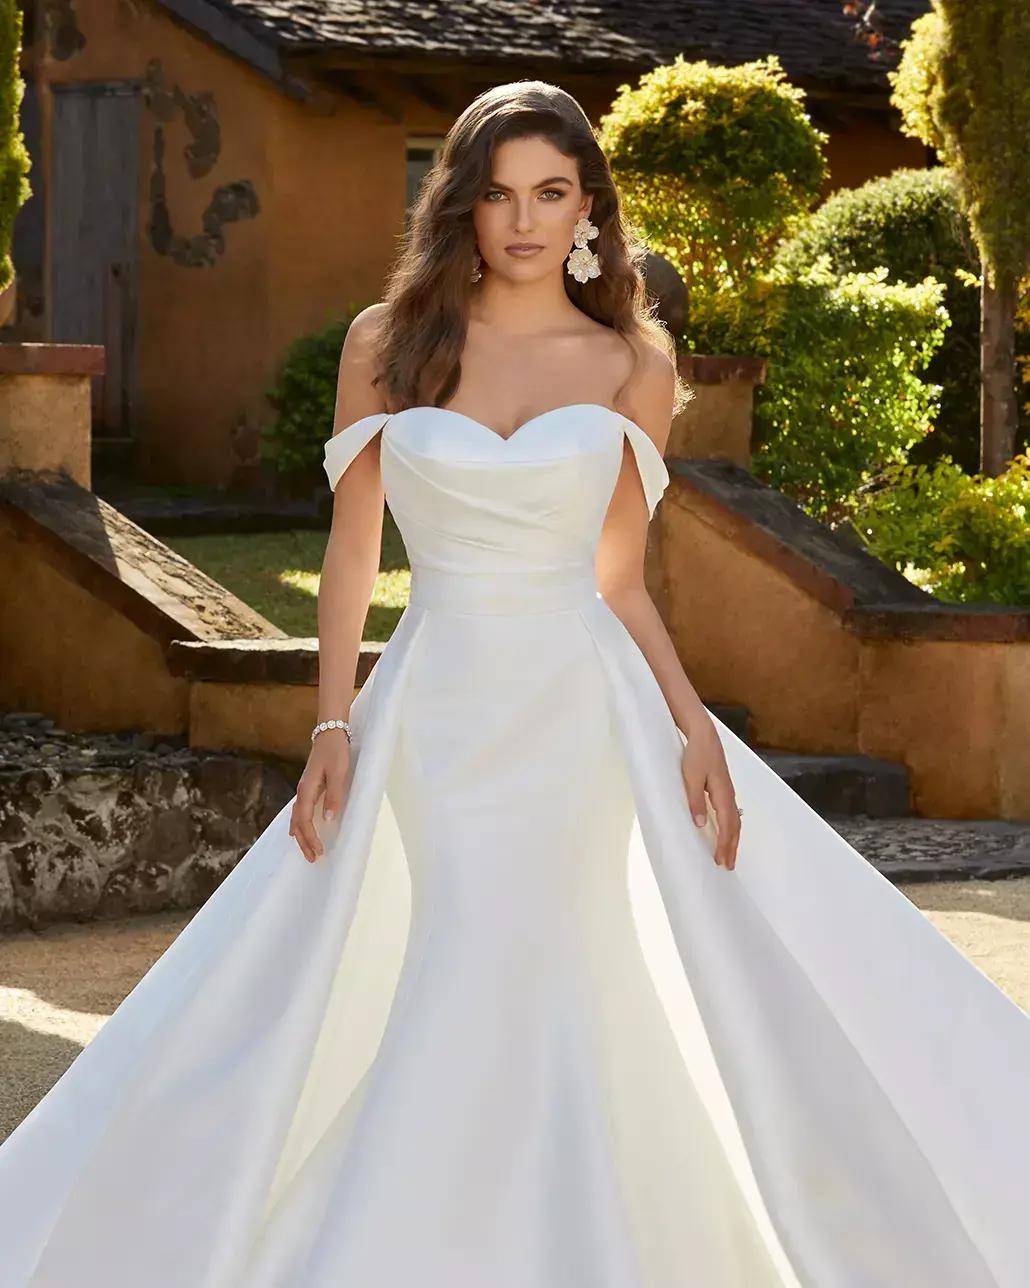 Brunette model in white wedding dress